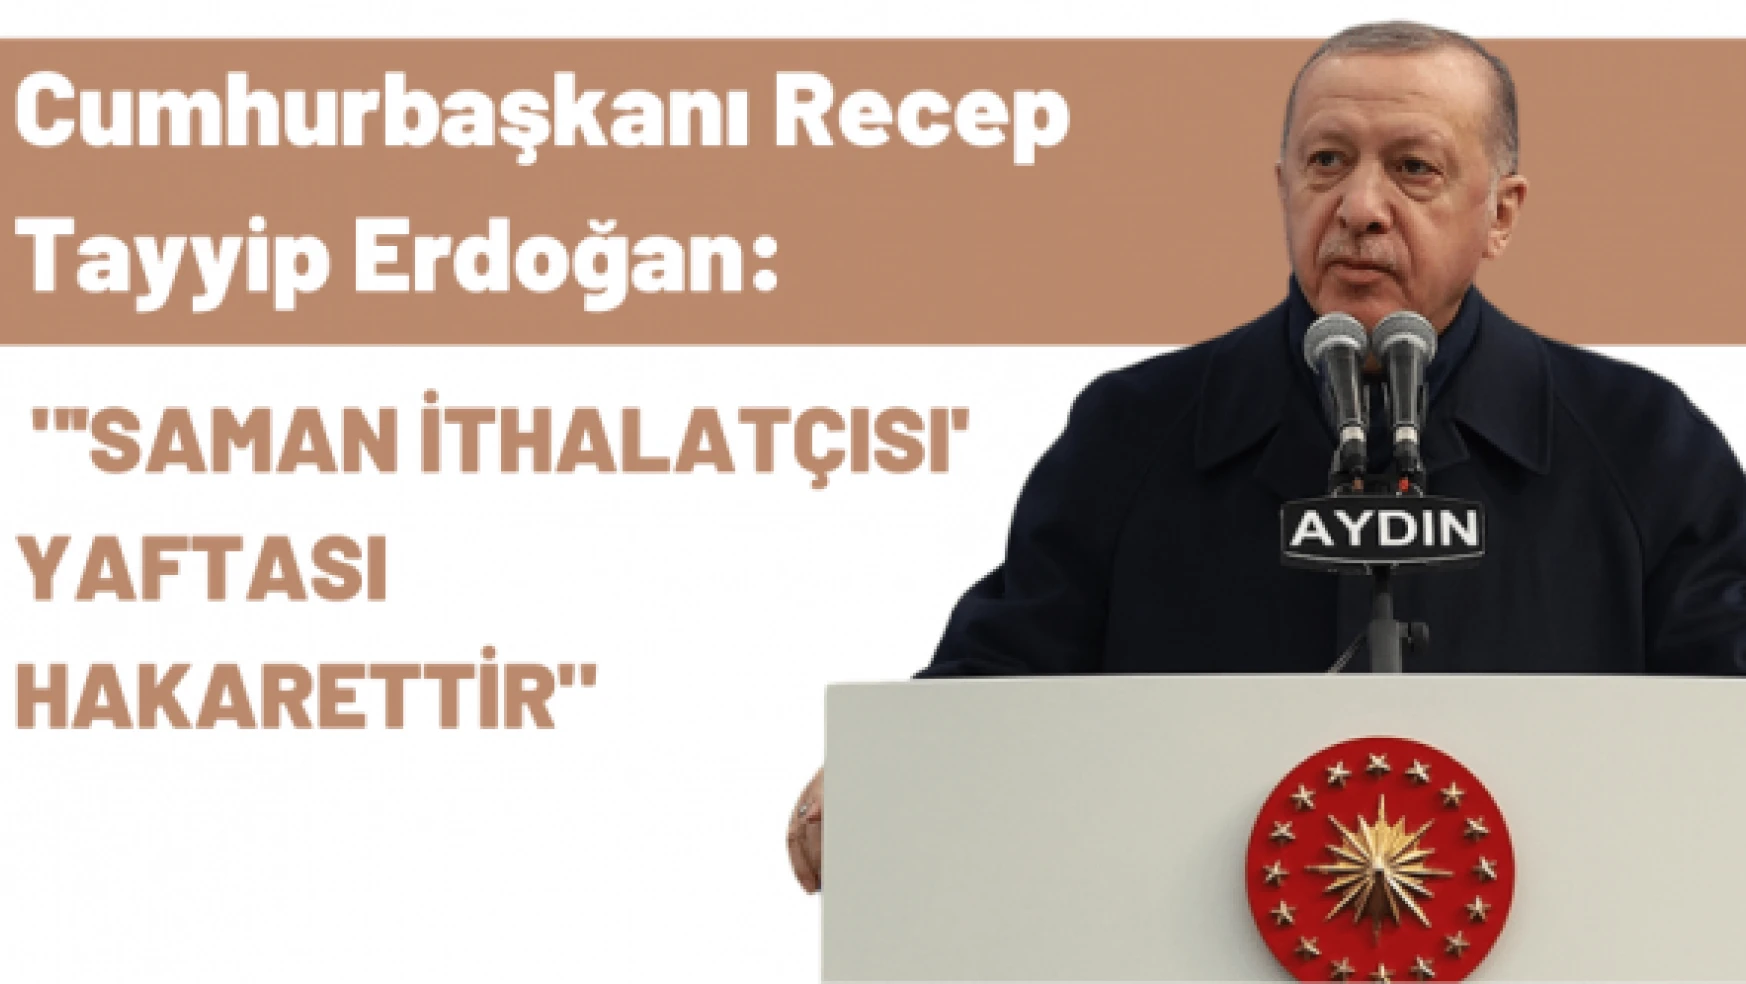 Cumhurbaşkanı Erdoğan: "'Saman ithalatçısı' yaftası hakarettir"